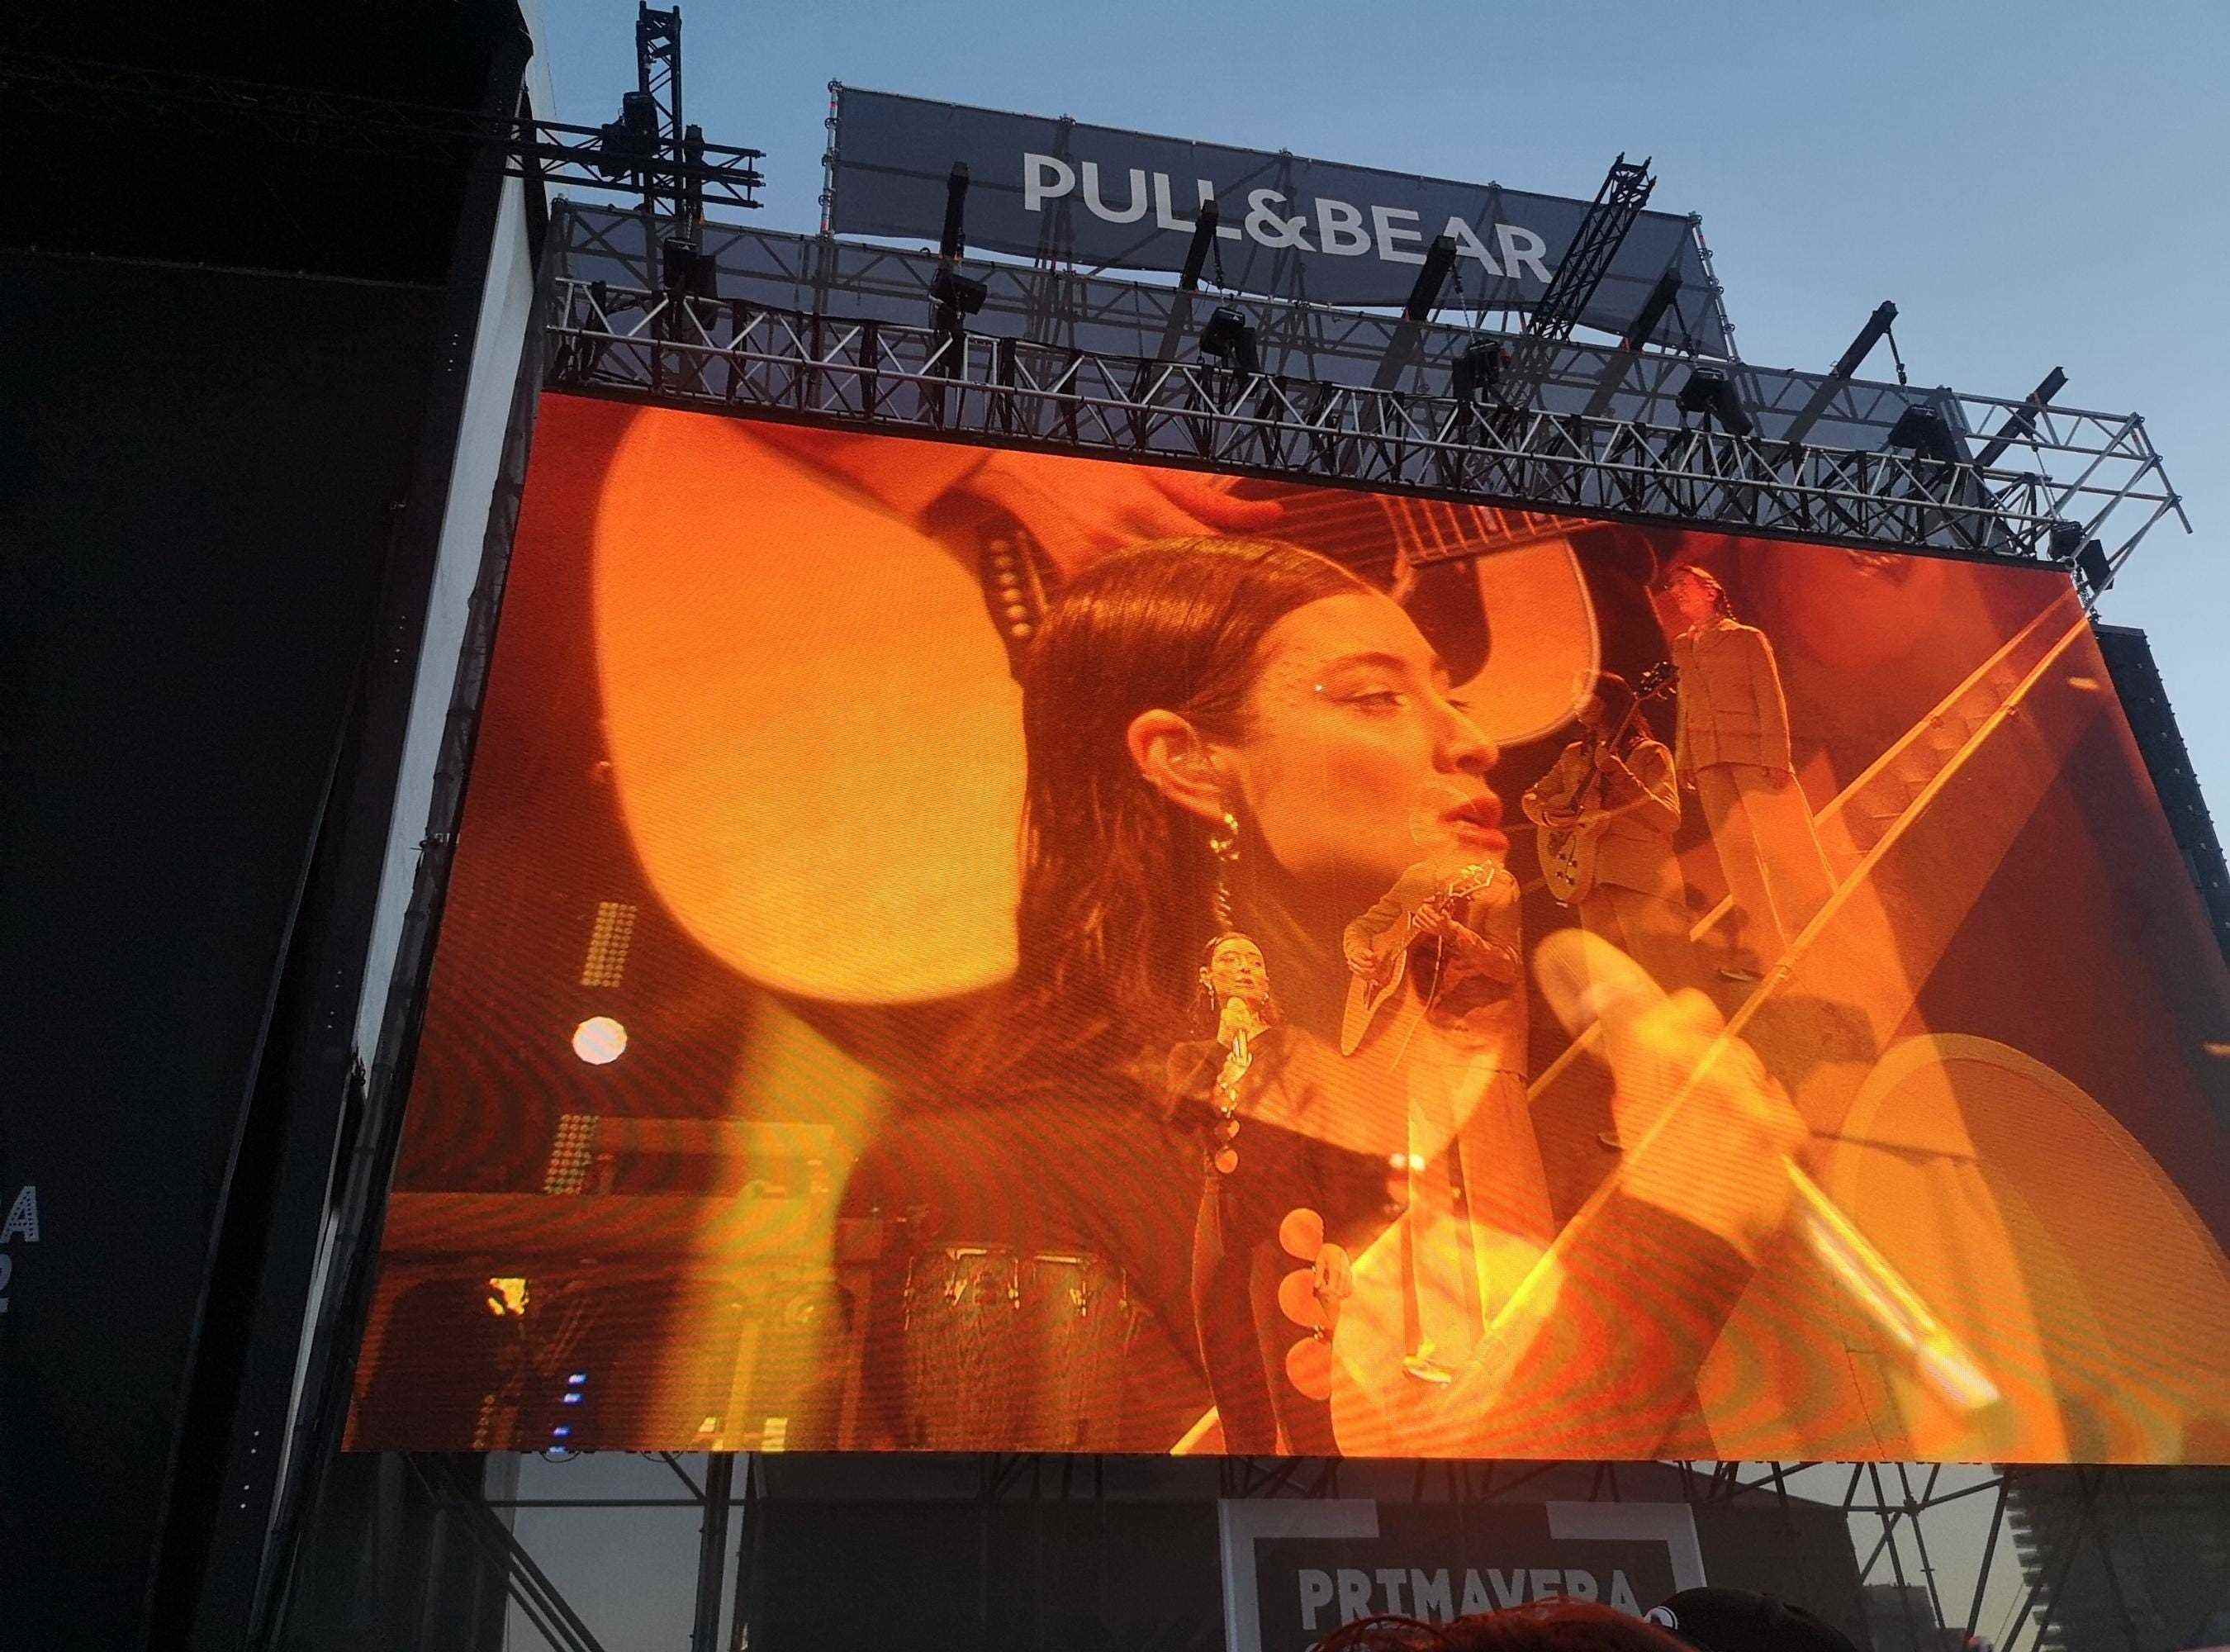 Lorde tritt am zweiten Tag des Festivals auf der Pull & Bear-Bühne auf.